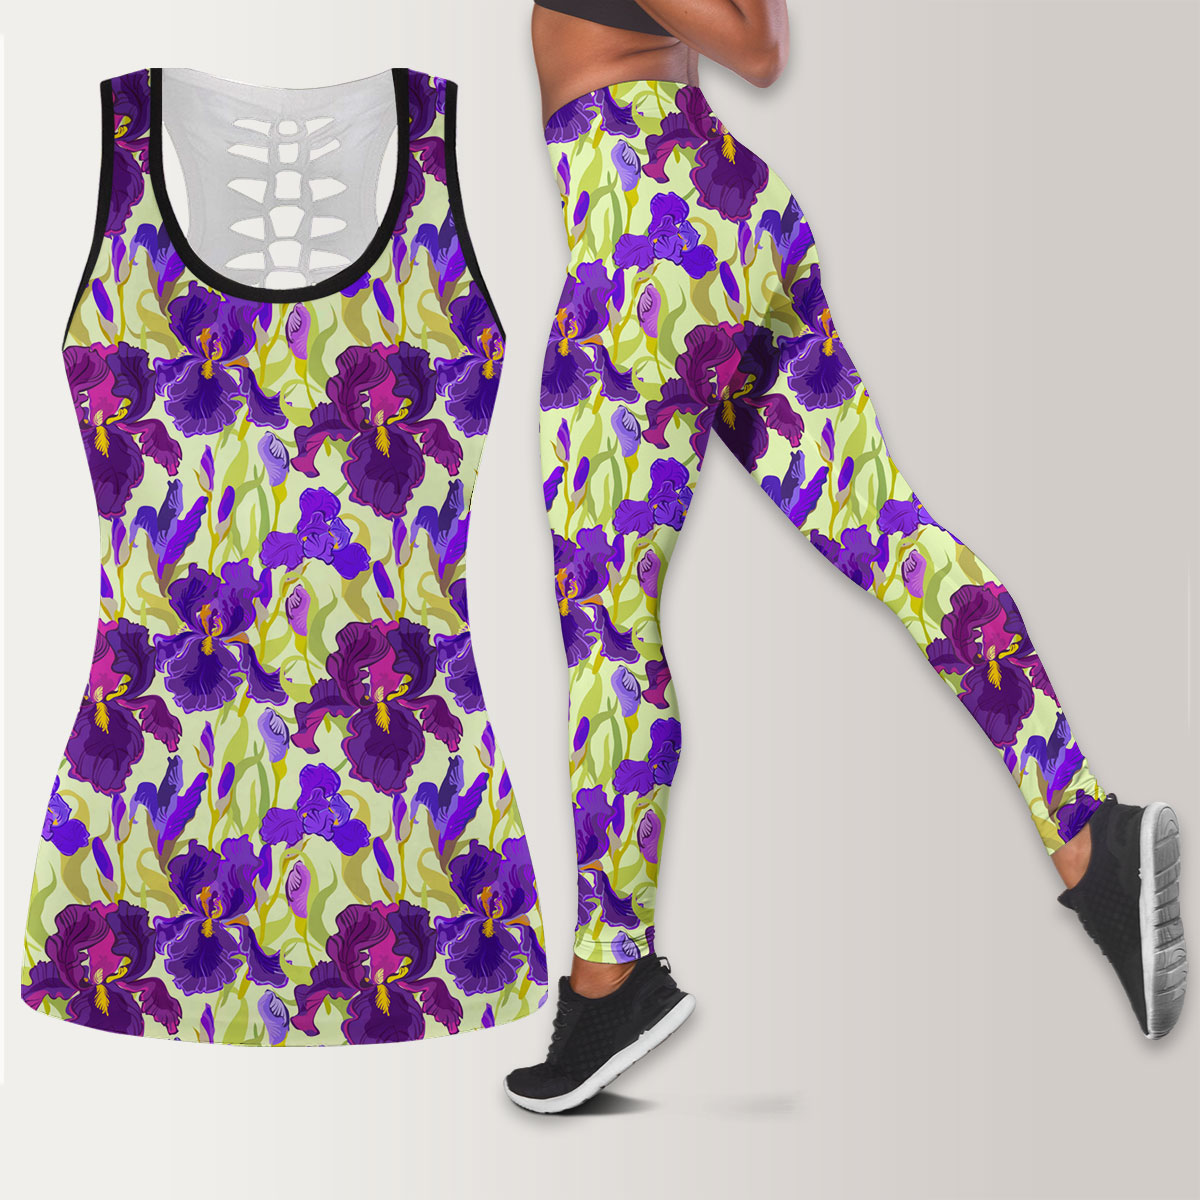 Floral Seamless Pattern Flower Iris Background Legging Tank Top set